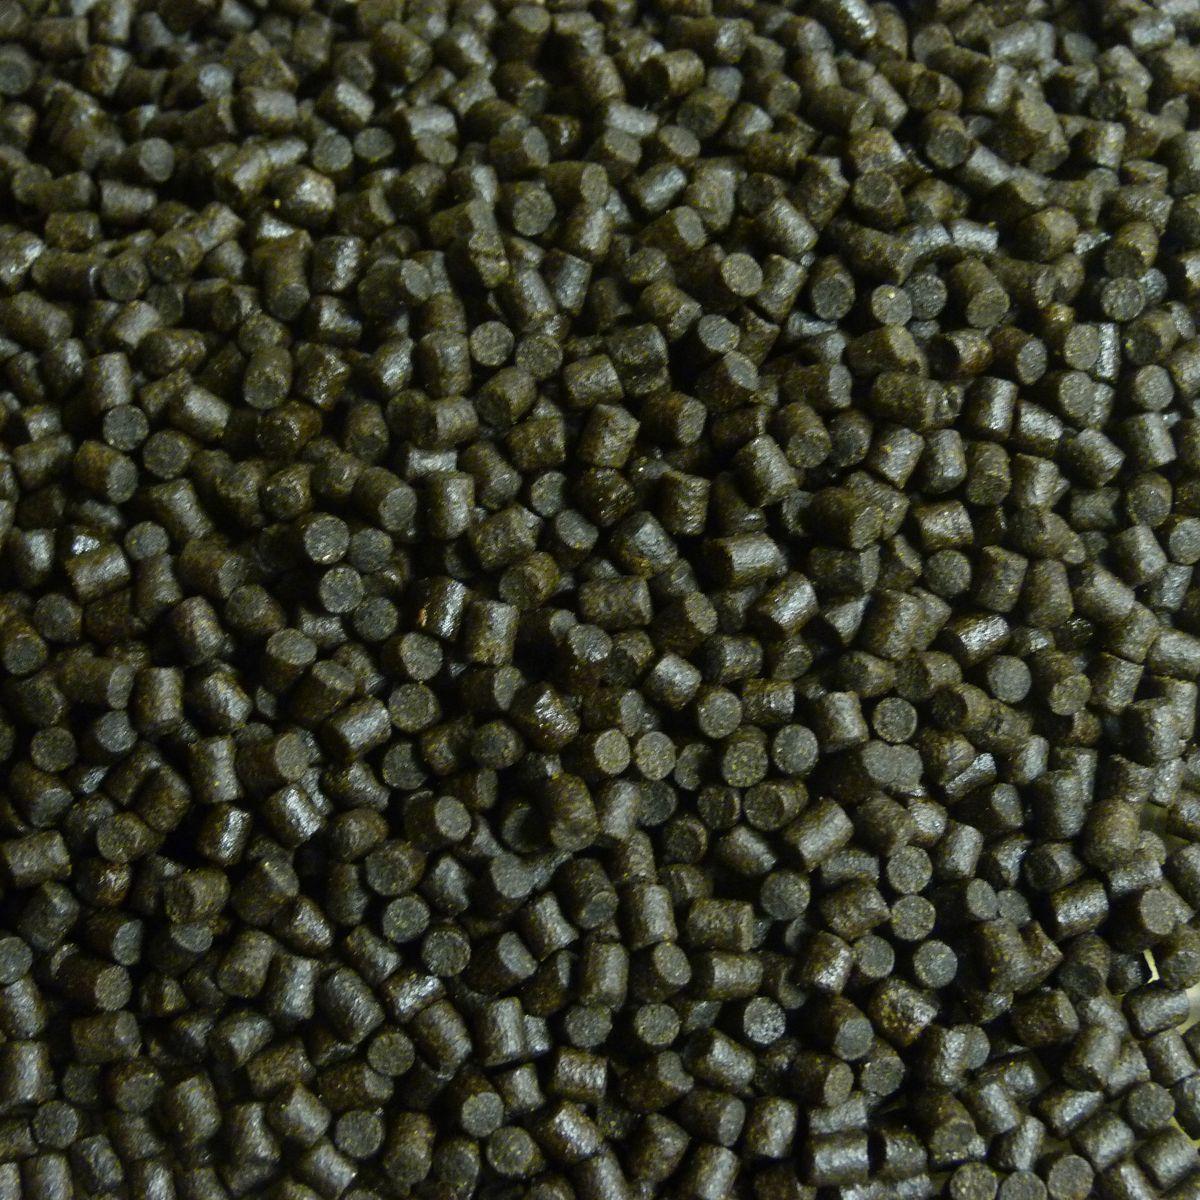 Coppens Halibut pellets | 4.5 mm